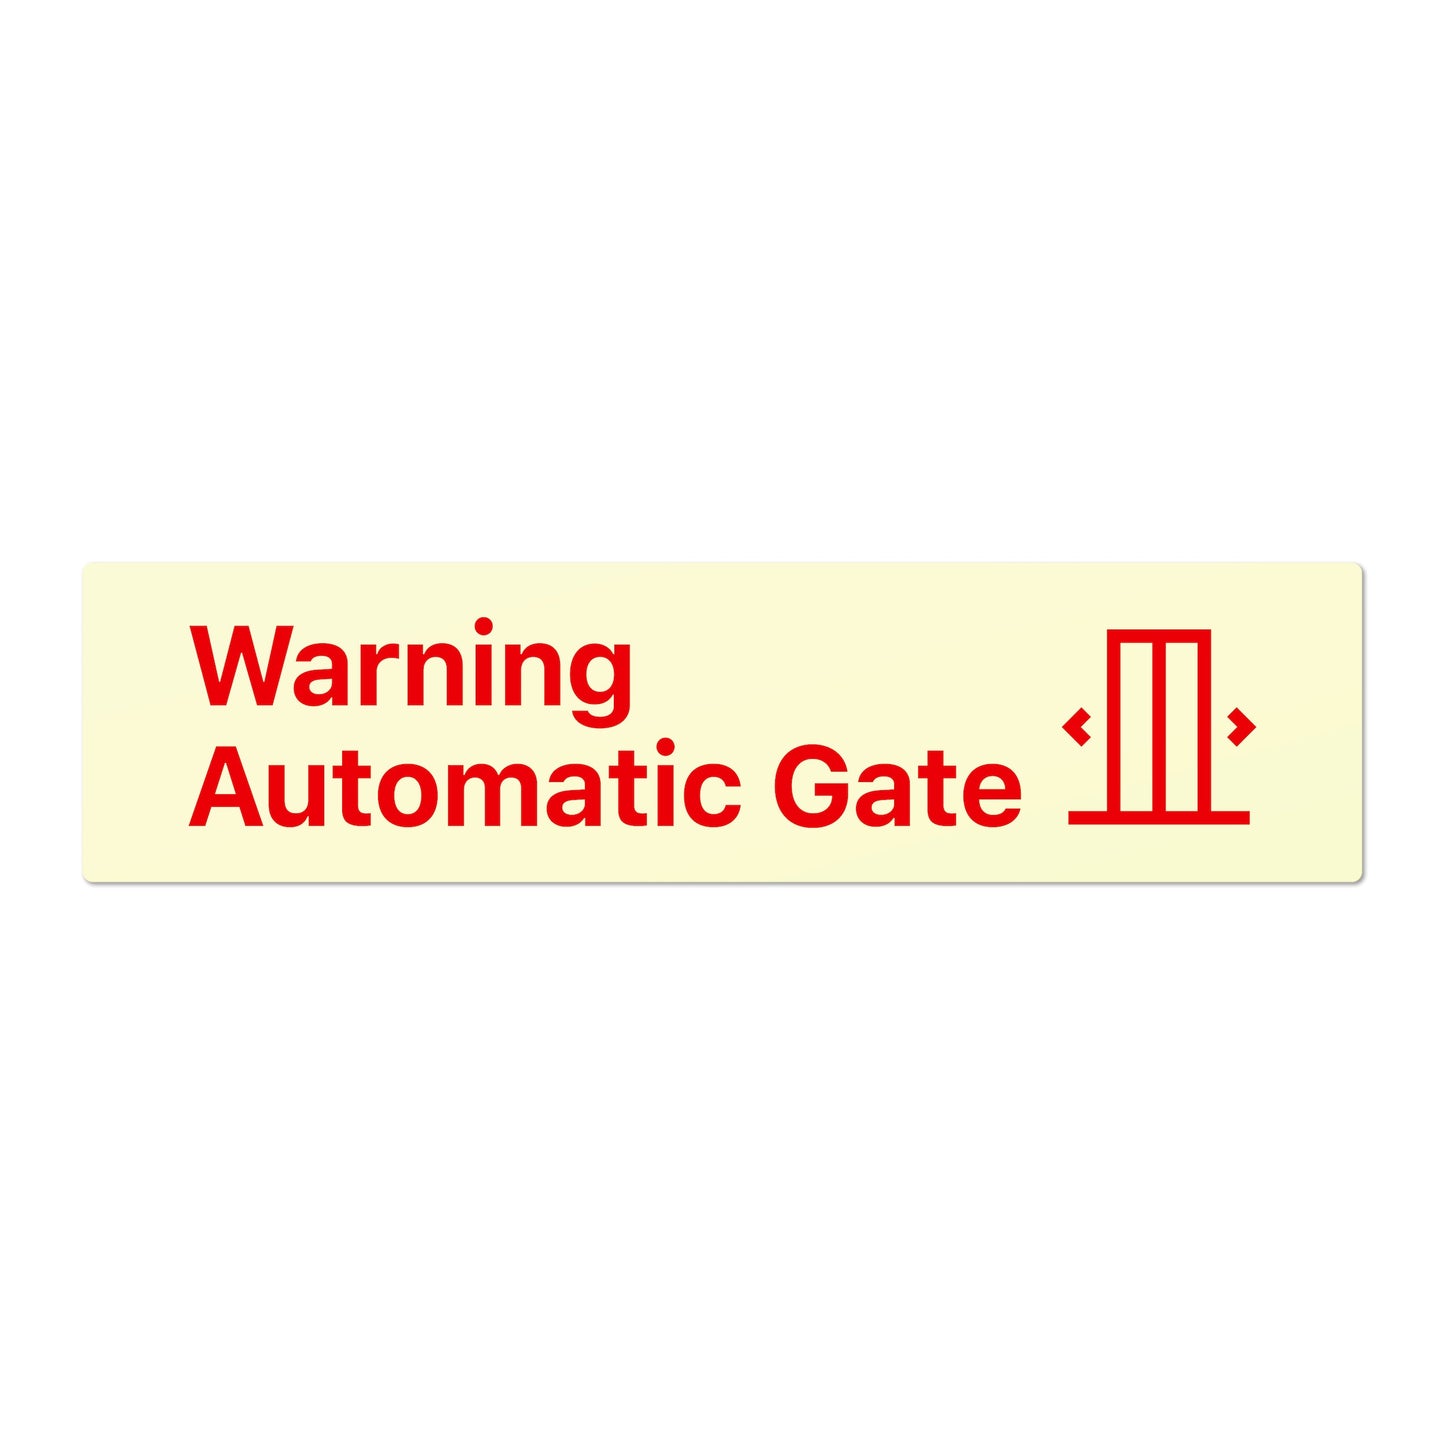 Warning Automatic Gate